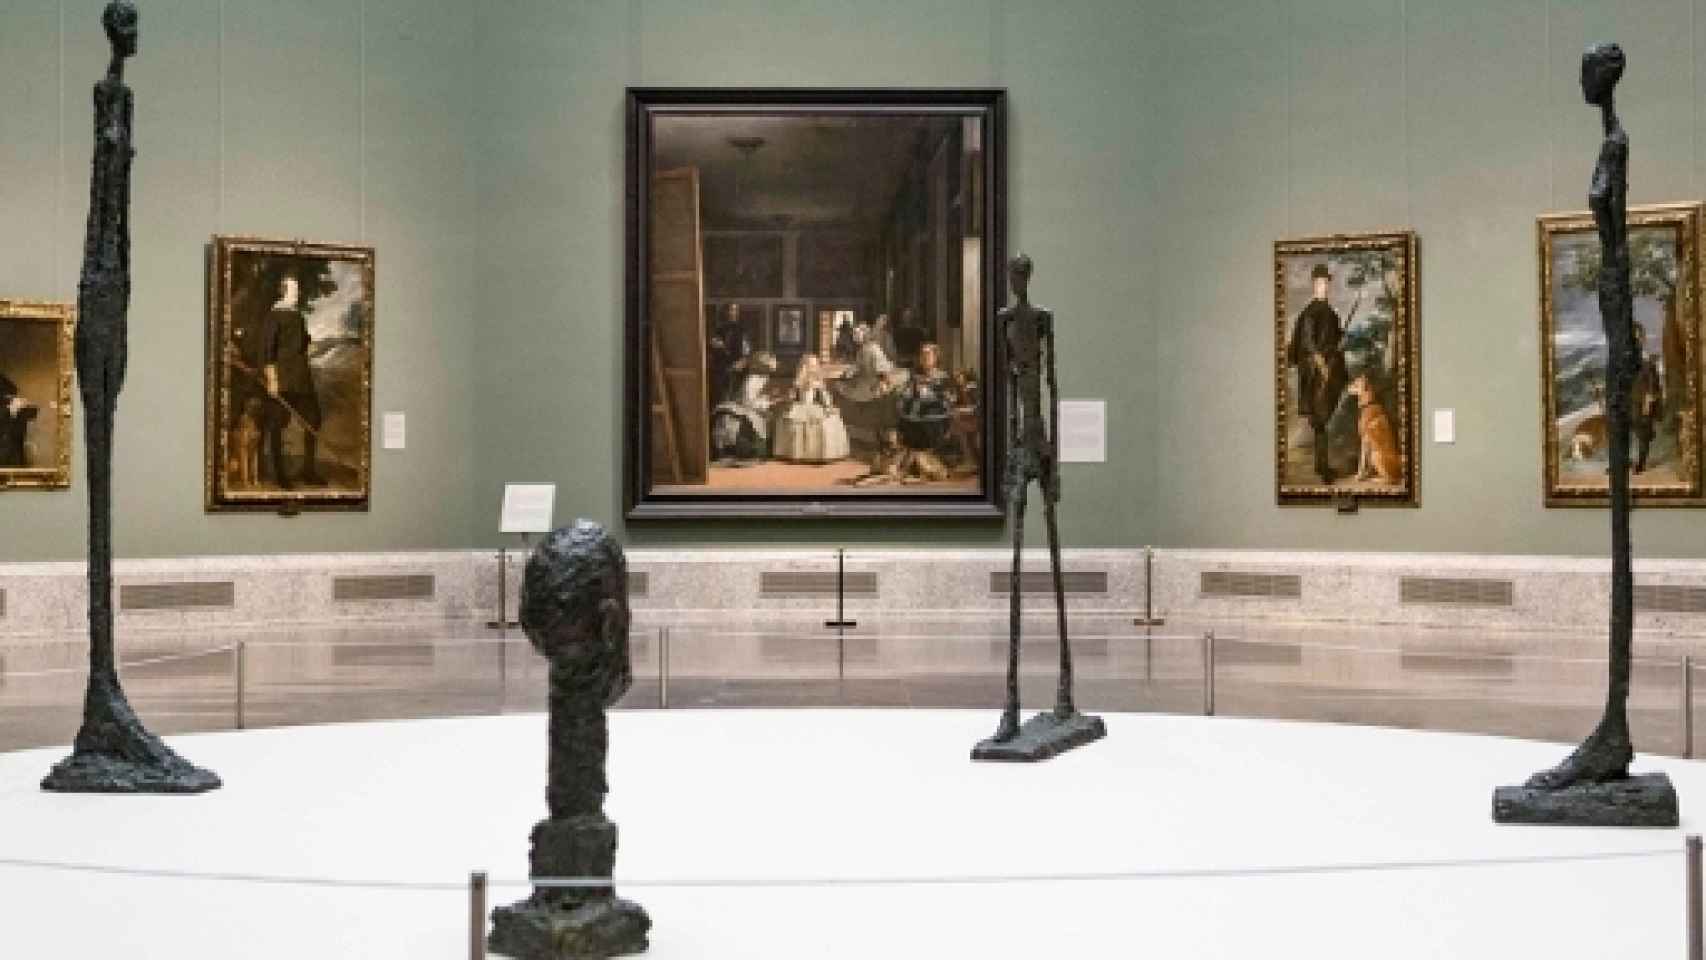 Image: Giacometti, el fantasma del arte recorre El Prado